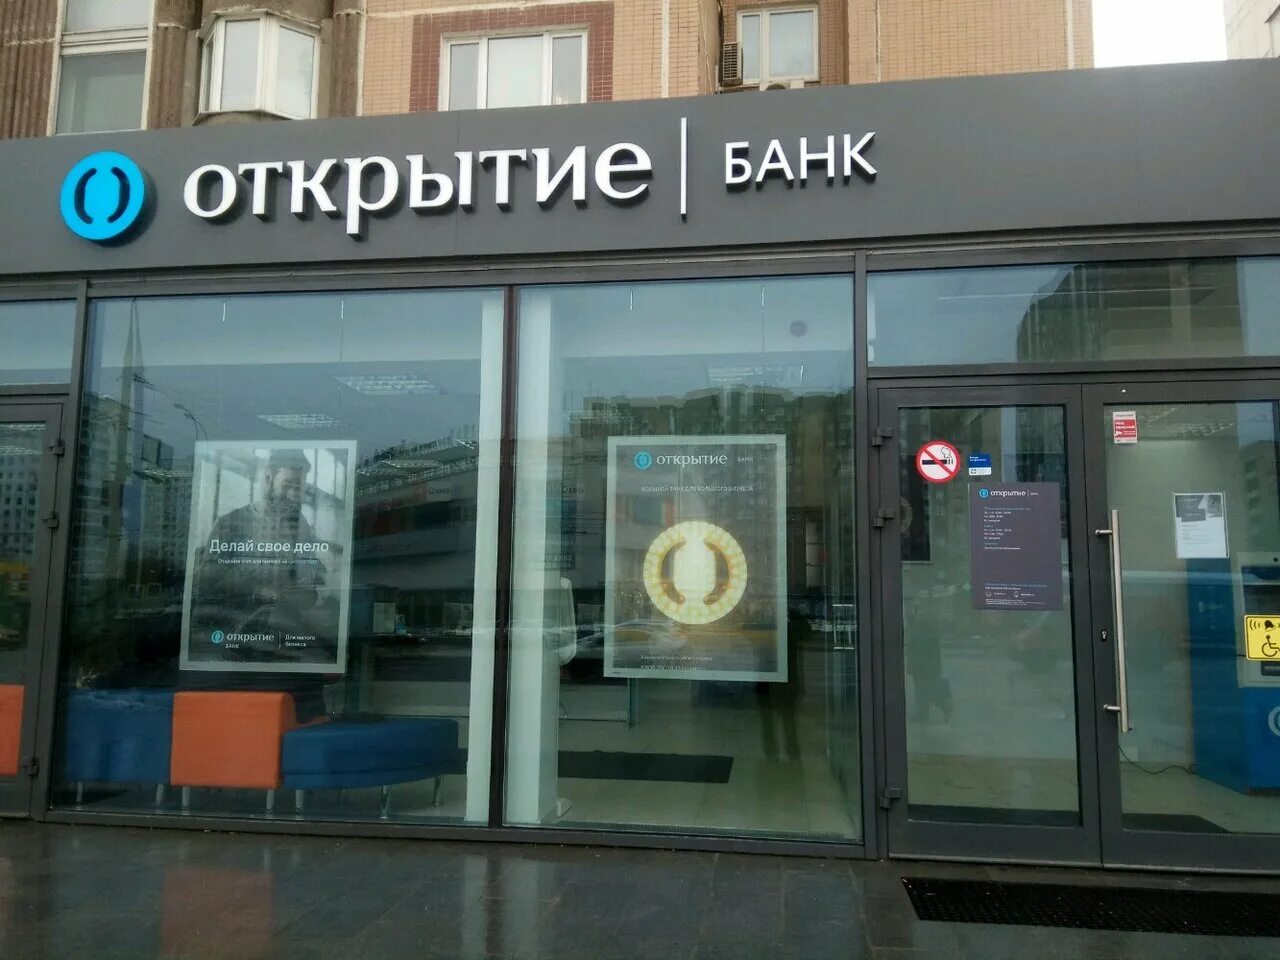 Банк открытие. Открытый банк. Банк открытие Москва. Открытые банки. Банки открытие рядом со мной на карте